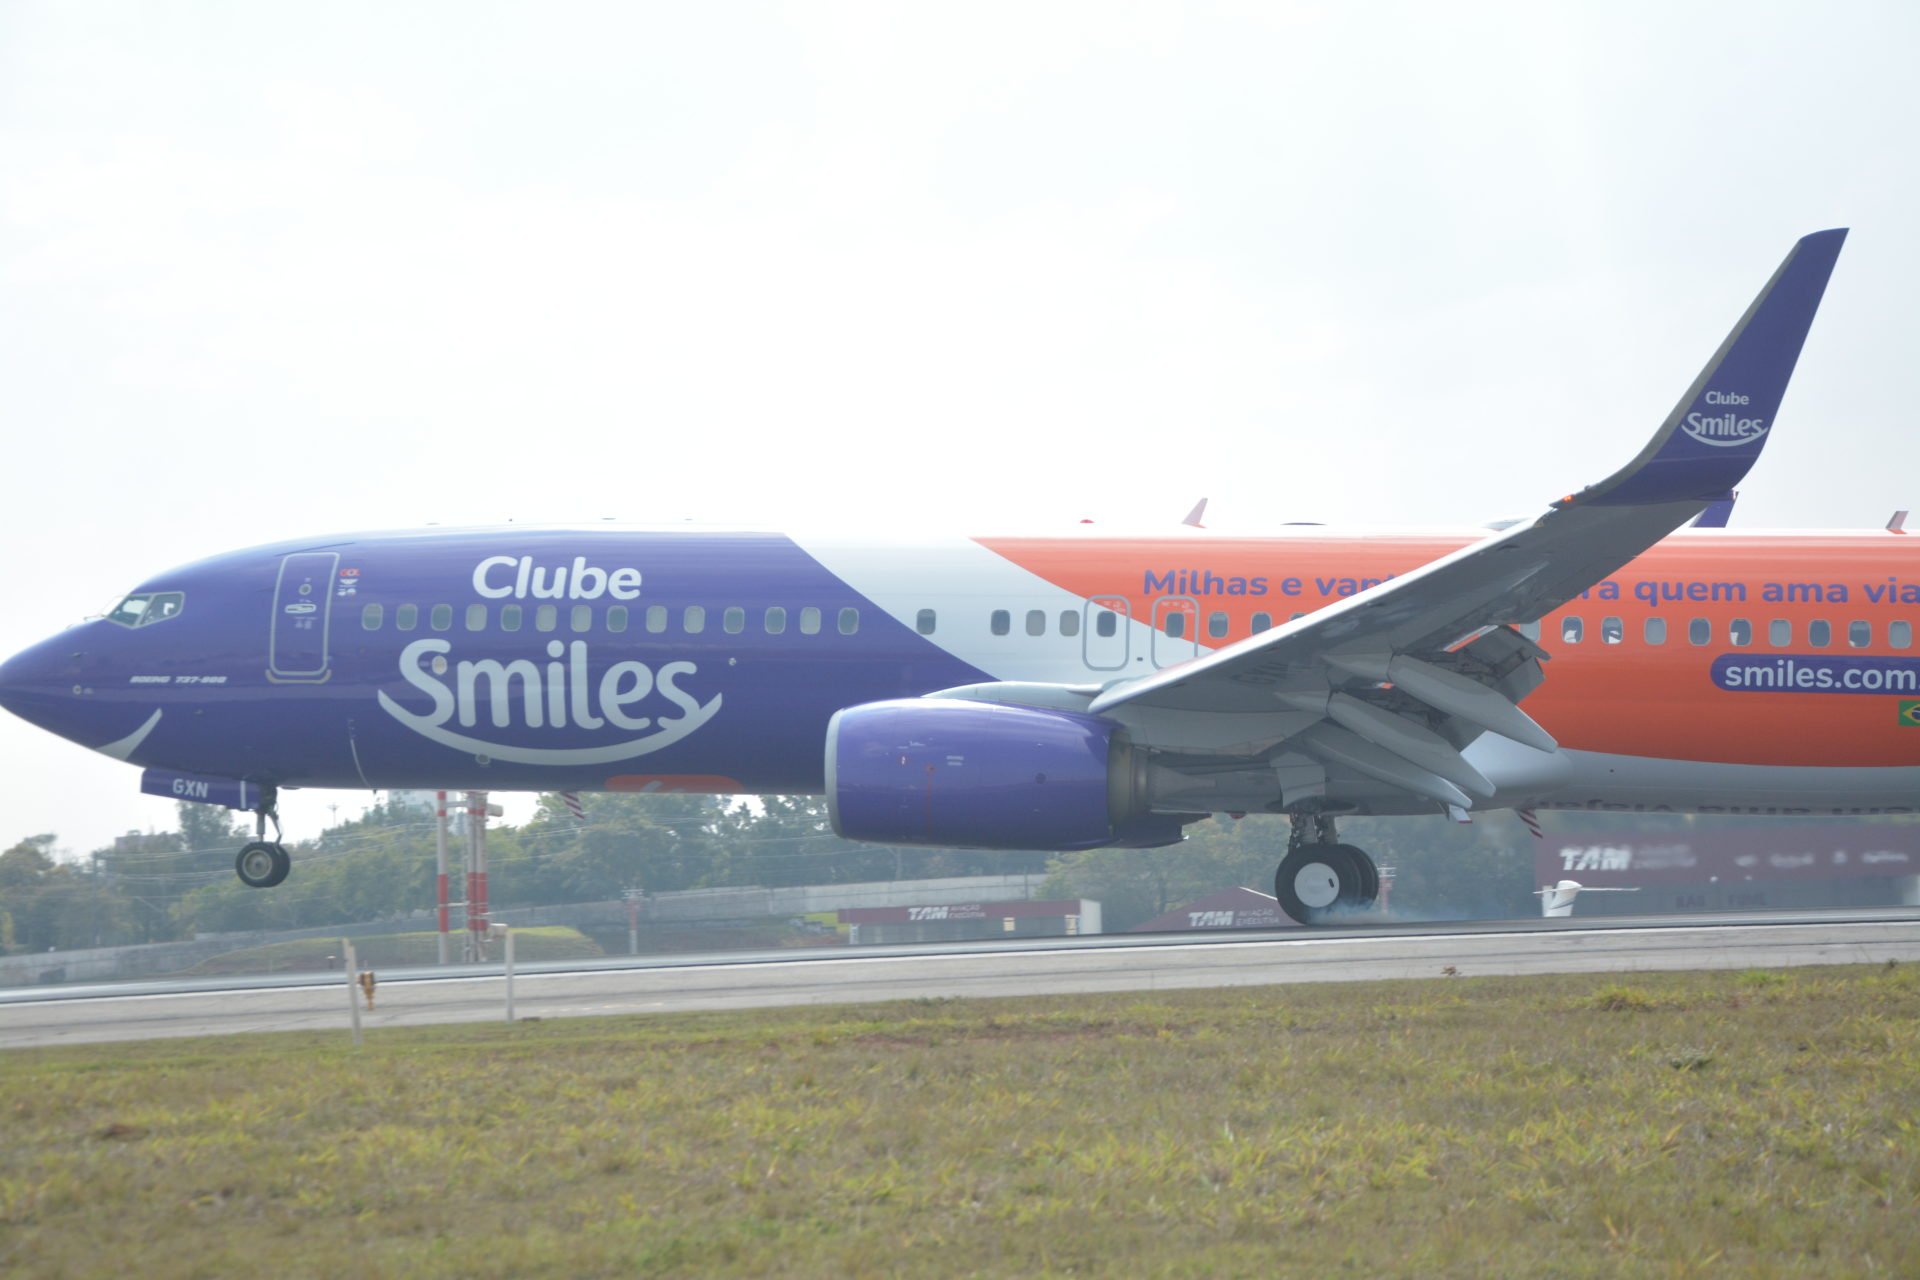 Conheça o avião da GOL personalizado com a pintura do Clube Smiles